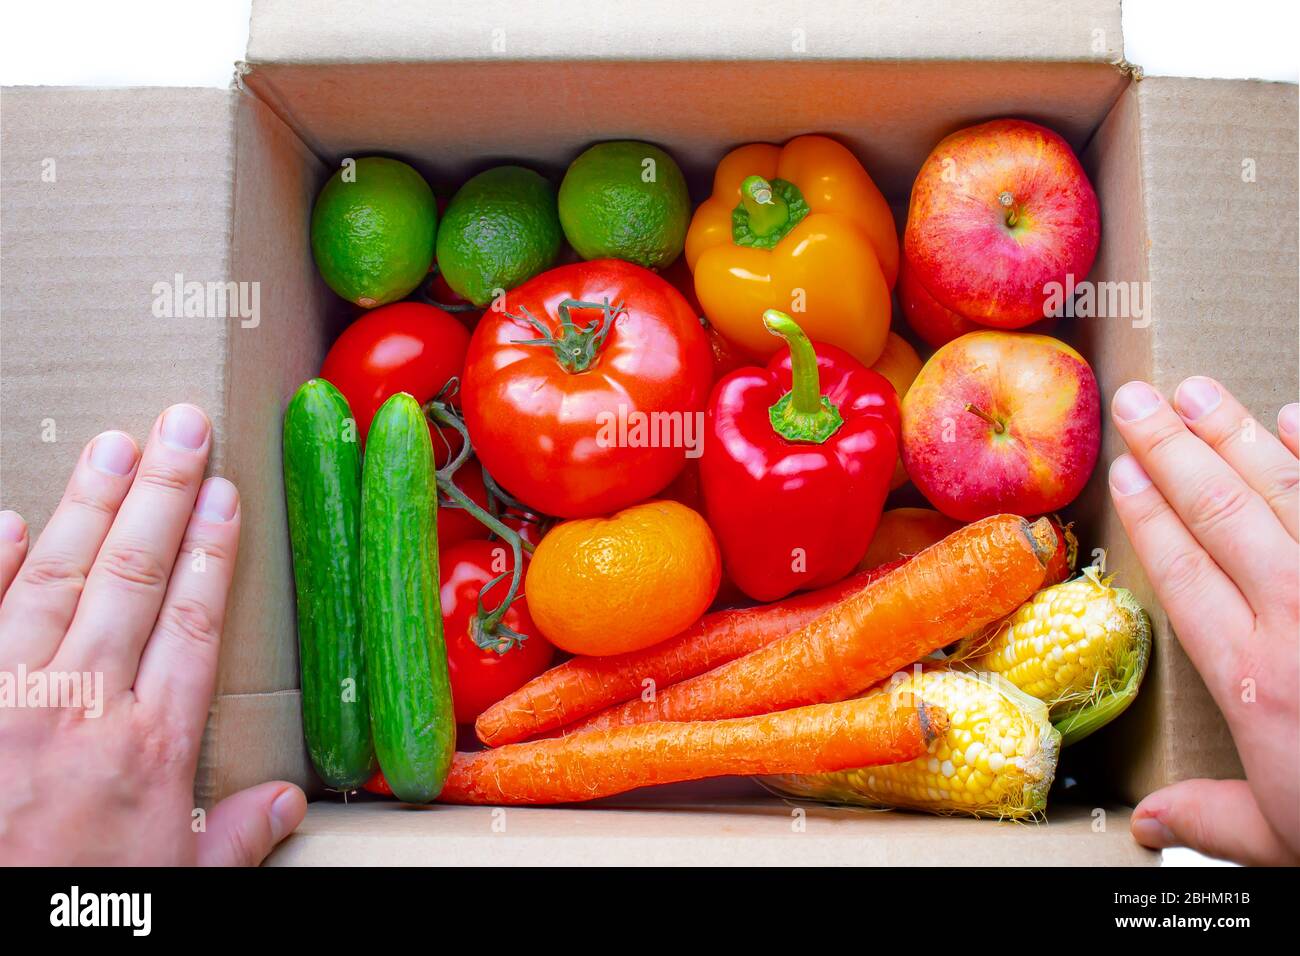 Une personne ouvrant une boîte de carton de livraison avec des produits, des fruits et des légumes à l'intérieur sur un fond blanc Banque D'Images